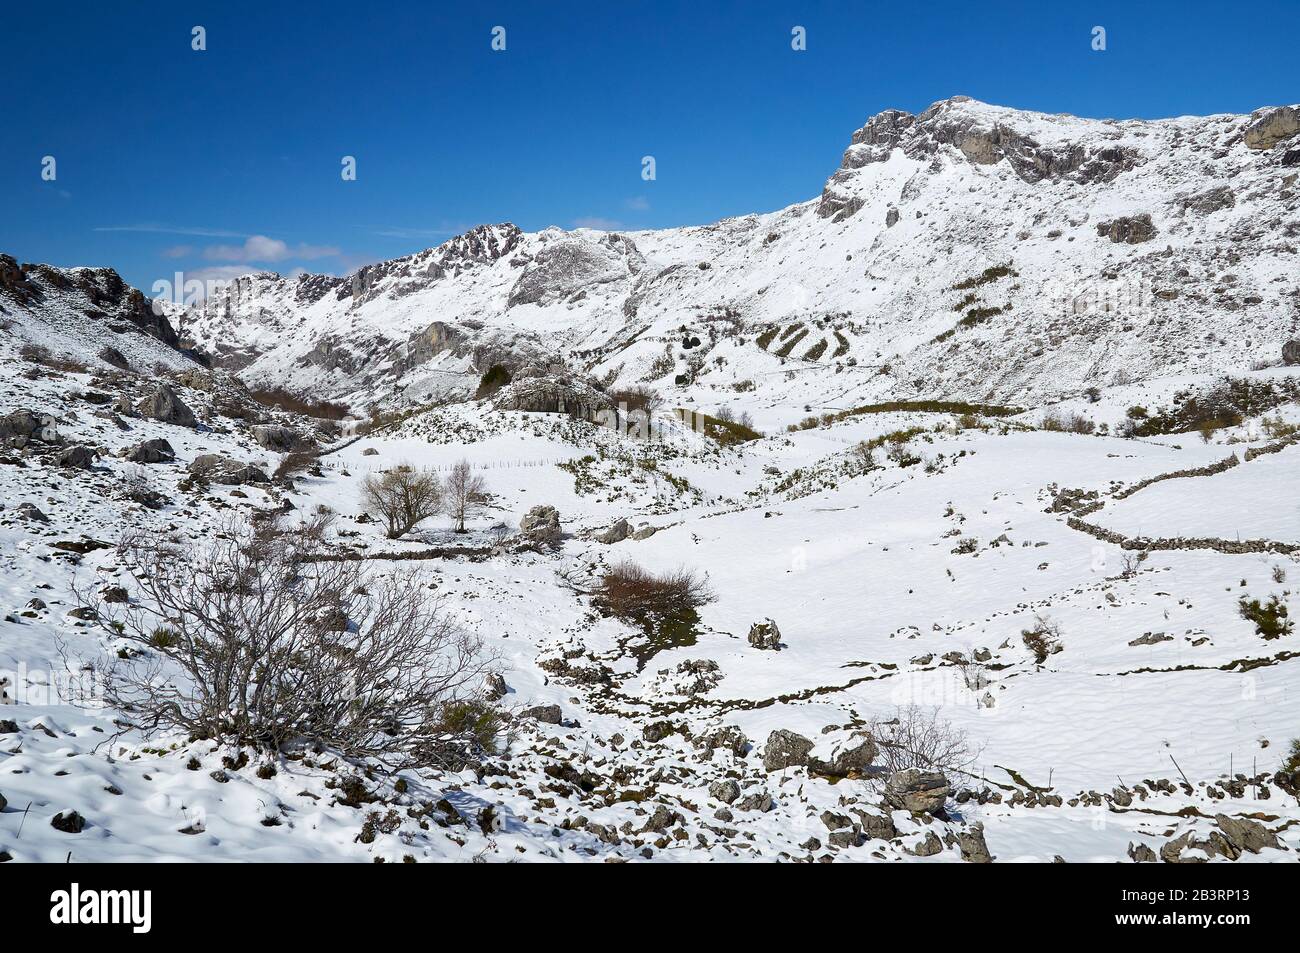 Paysage enneigé d'hiver avec neige fraîche immaculée dans une journée ensoleillée sur le sentier de randonnée PR.AS-15 (Valle del Lago, Soriedo Natural Park, Asturies, Espagne) Banque D'Images